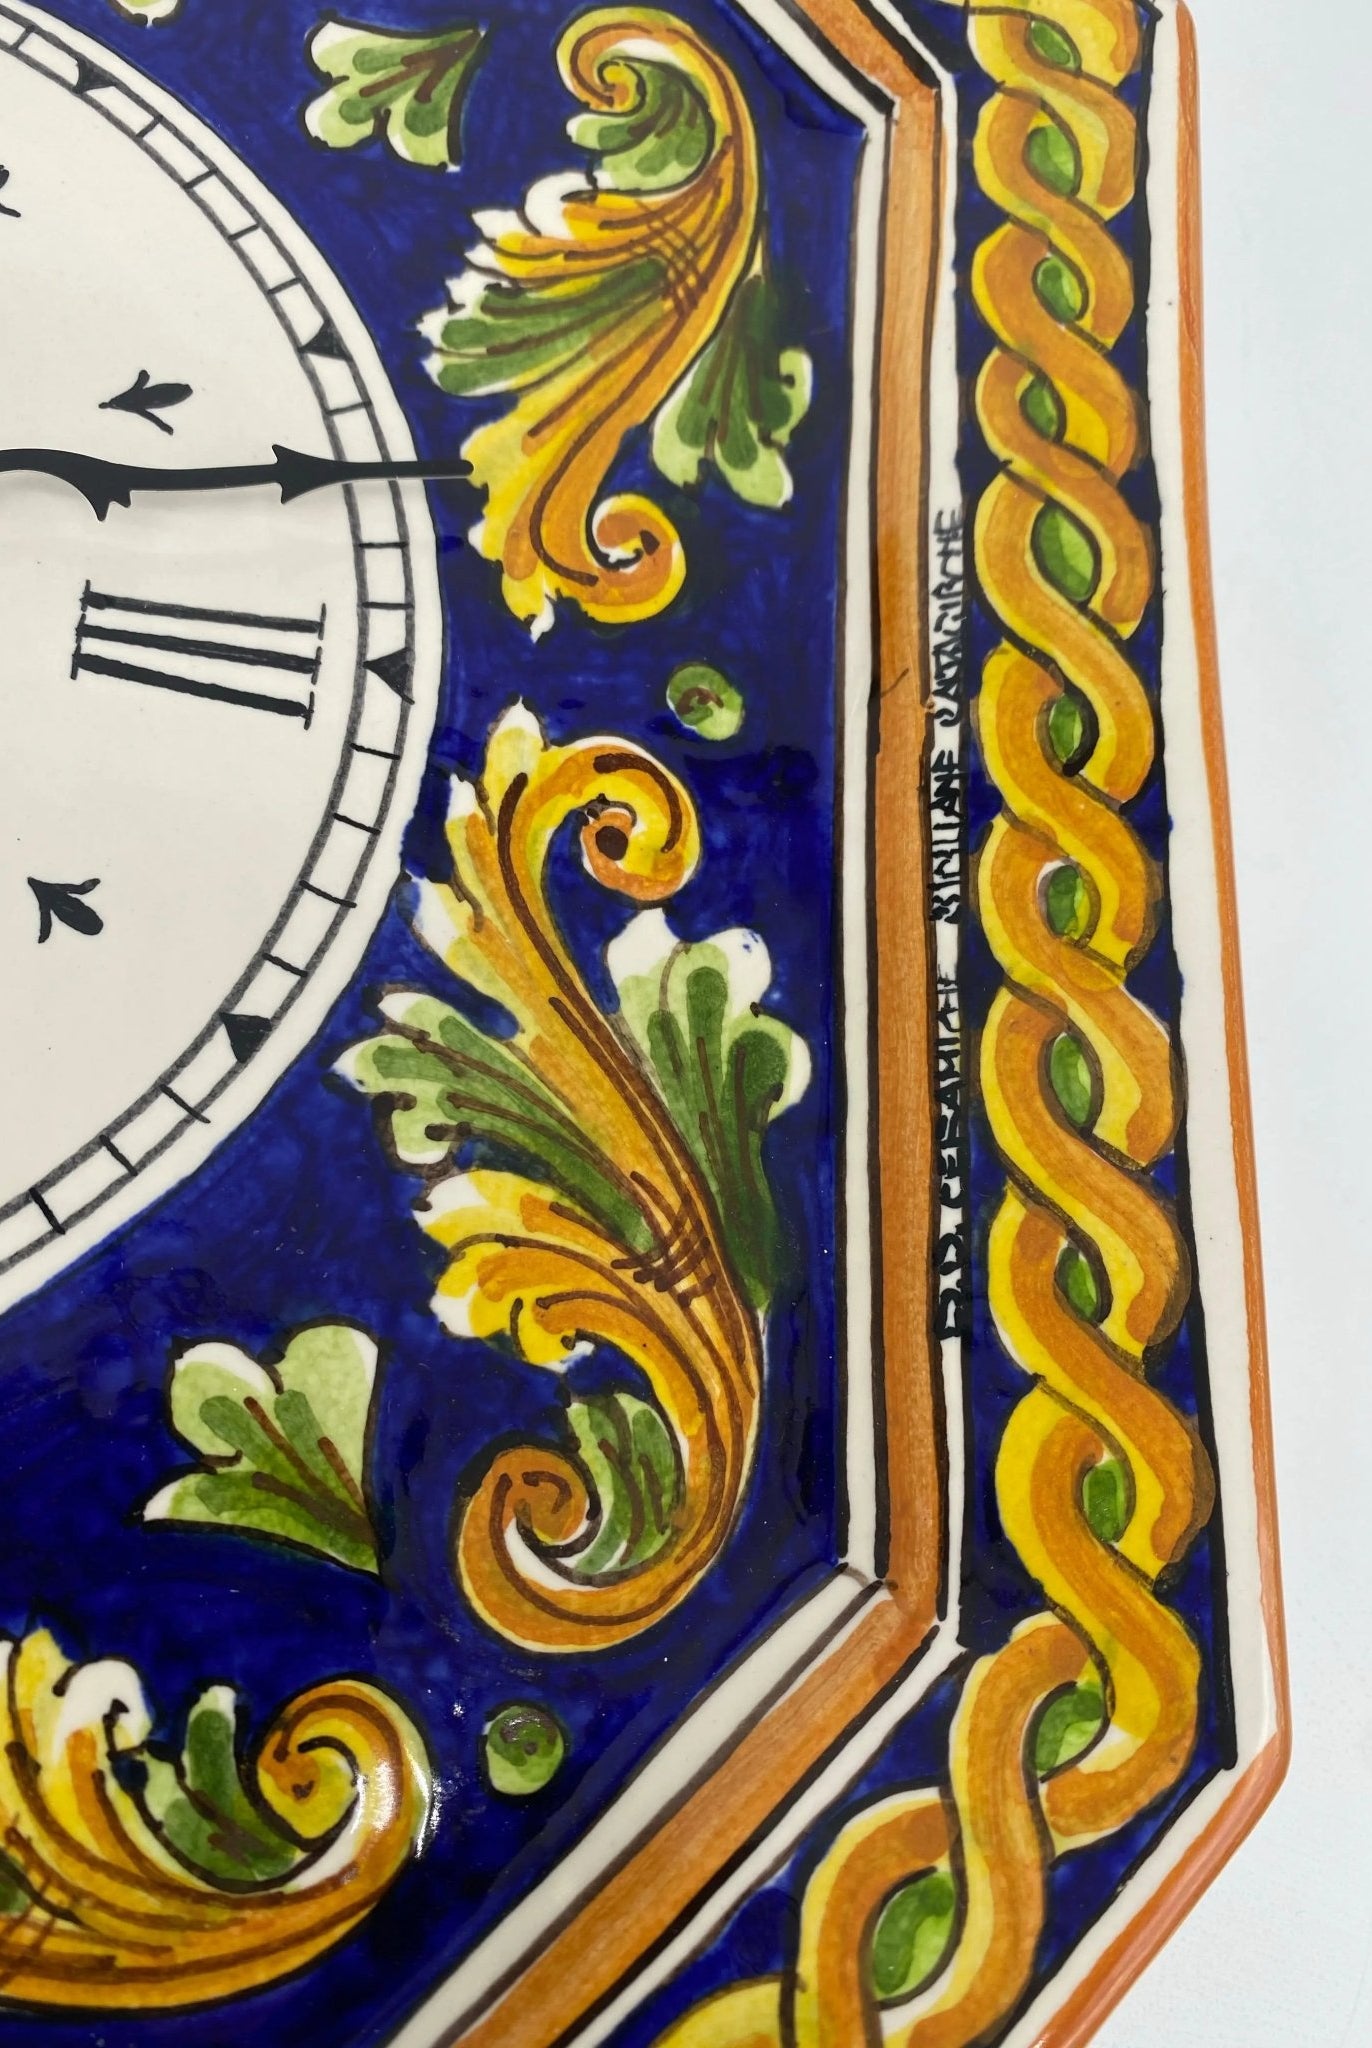 Orologio da Parete Ceramica Caltagirone Ottagonale dipinto a mano cm 32 Decoro n.2 - DD CERAMICHE SICILIANE